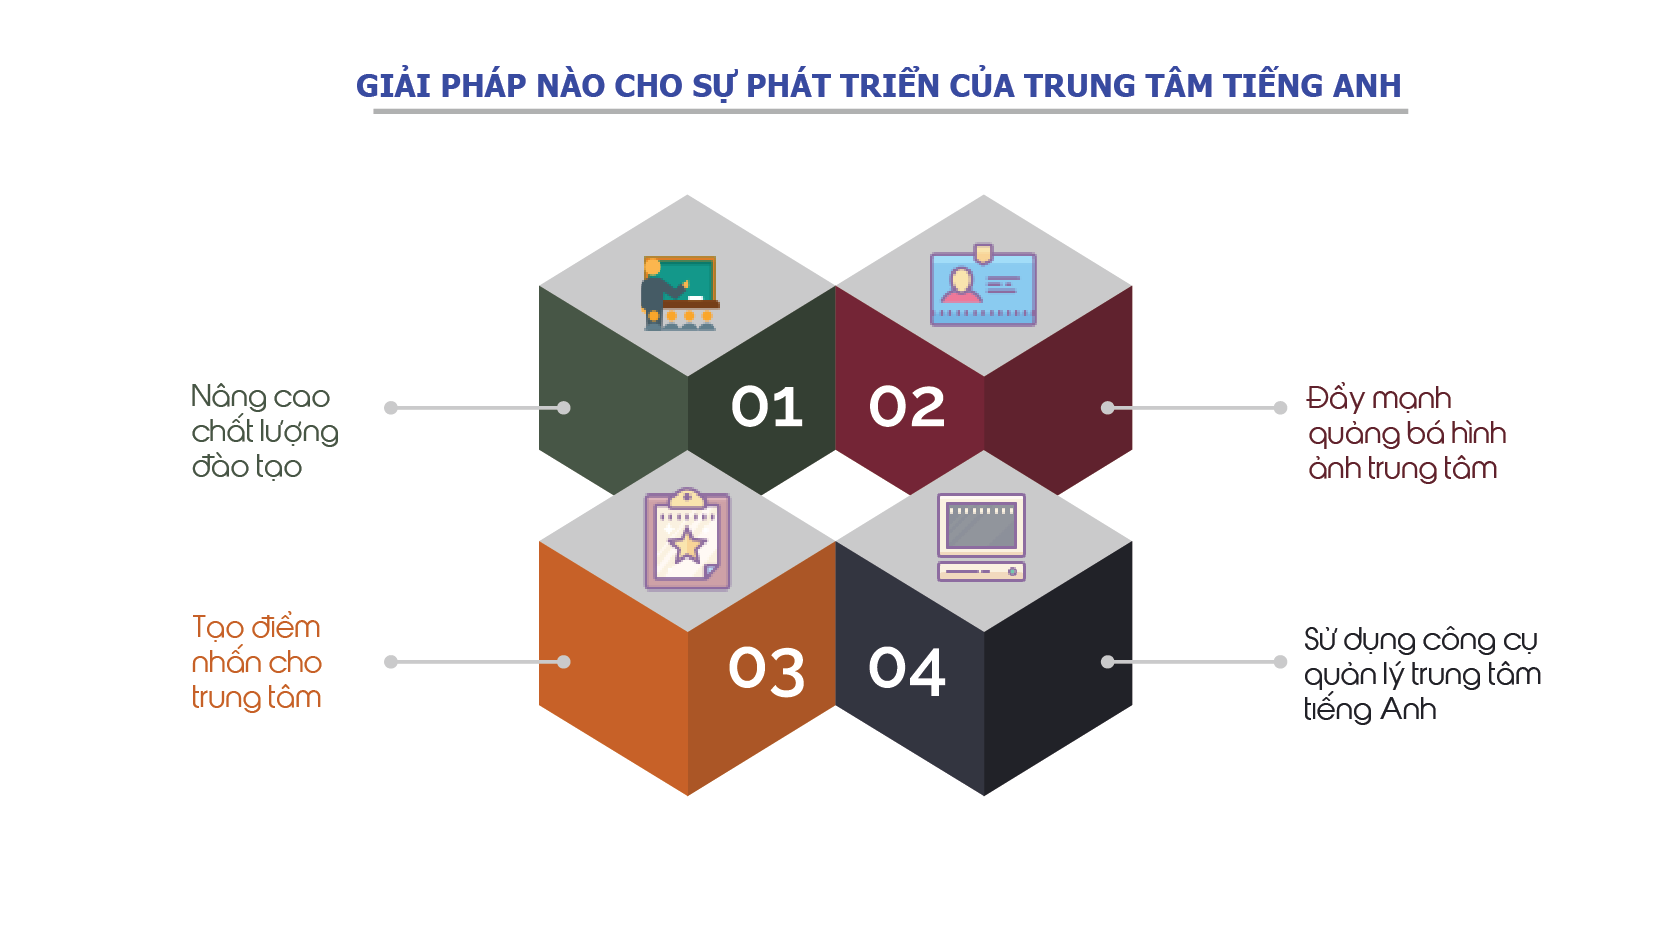 Kinh doanh mô hình trung tâm Anh ngữ P1  Tổng quan thị trường  Vietnam  Entrepreneurs  YouTube